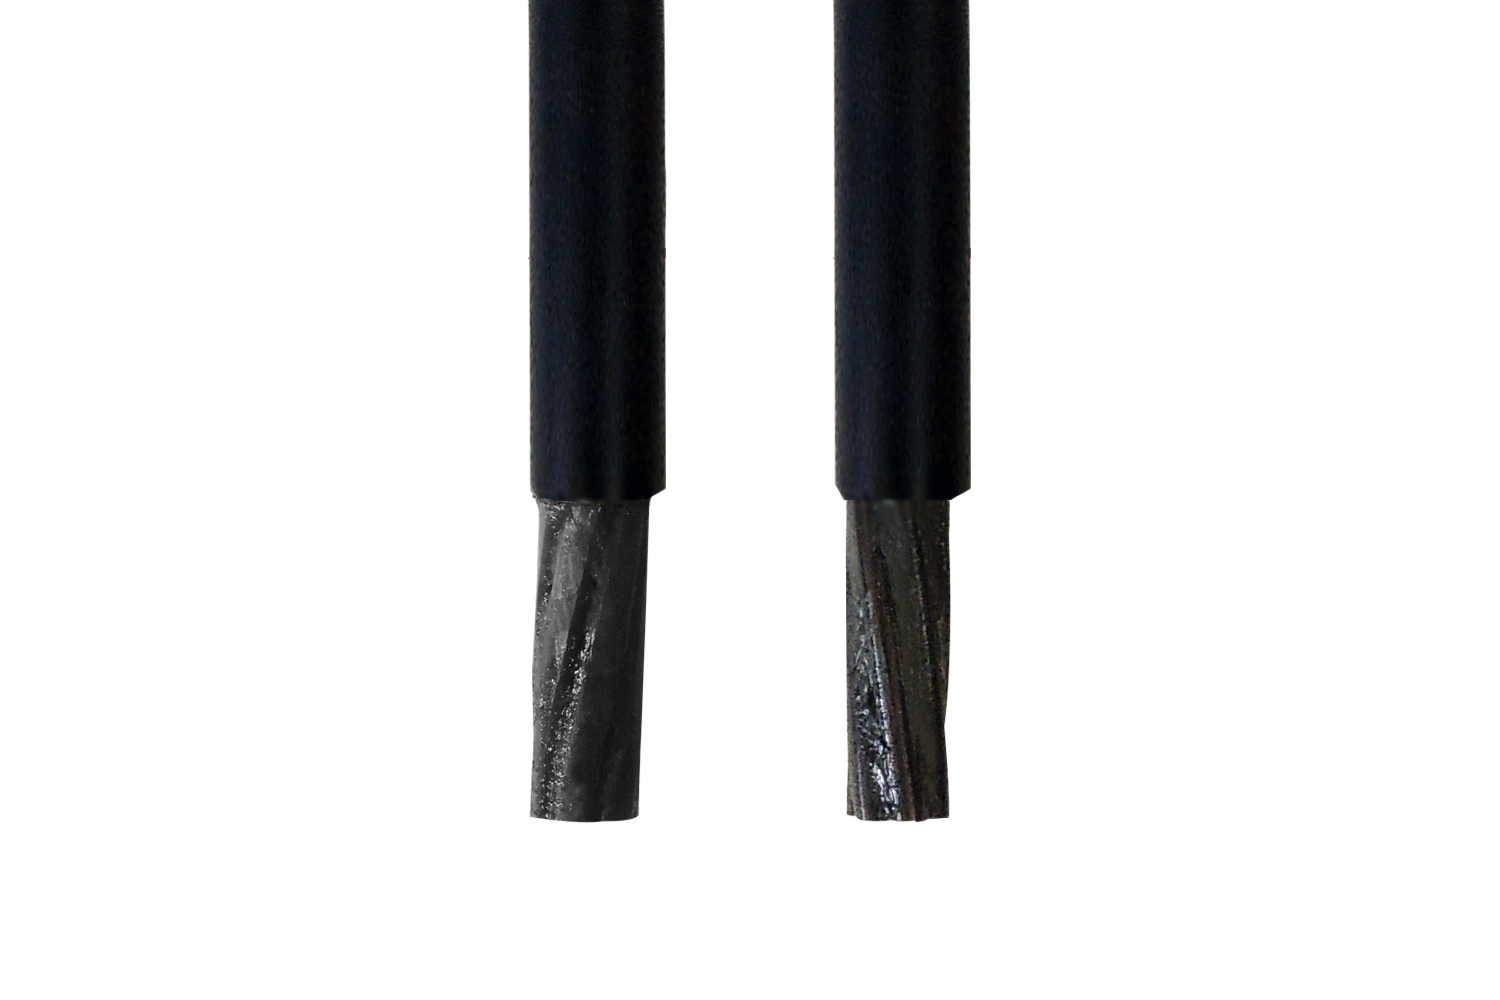 LIYZ 0,14mm² Cavo gemello trefolo 2-Fili drilling trefolo 3-Fili per la selezione 